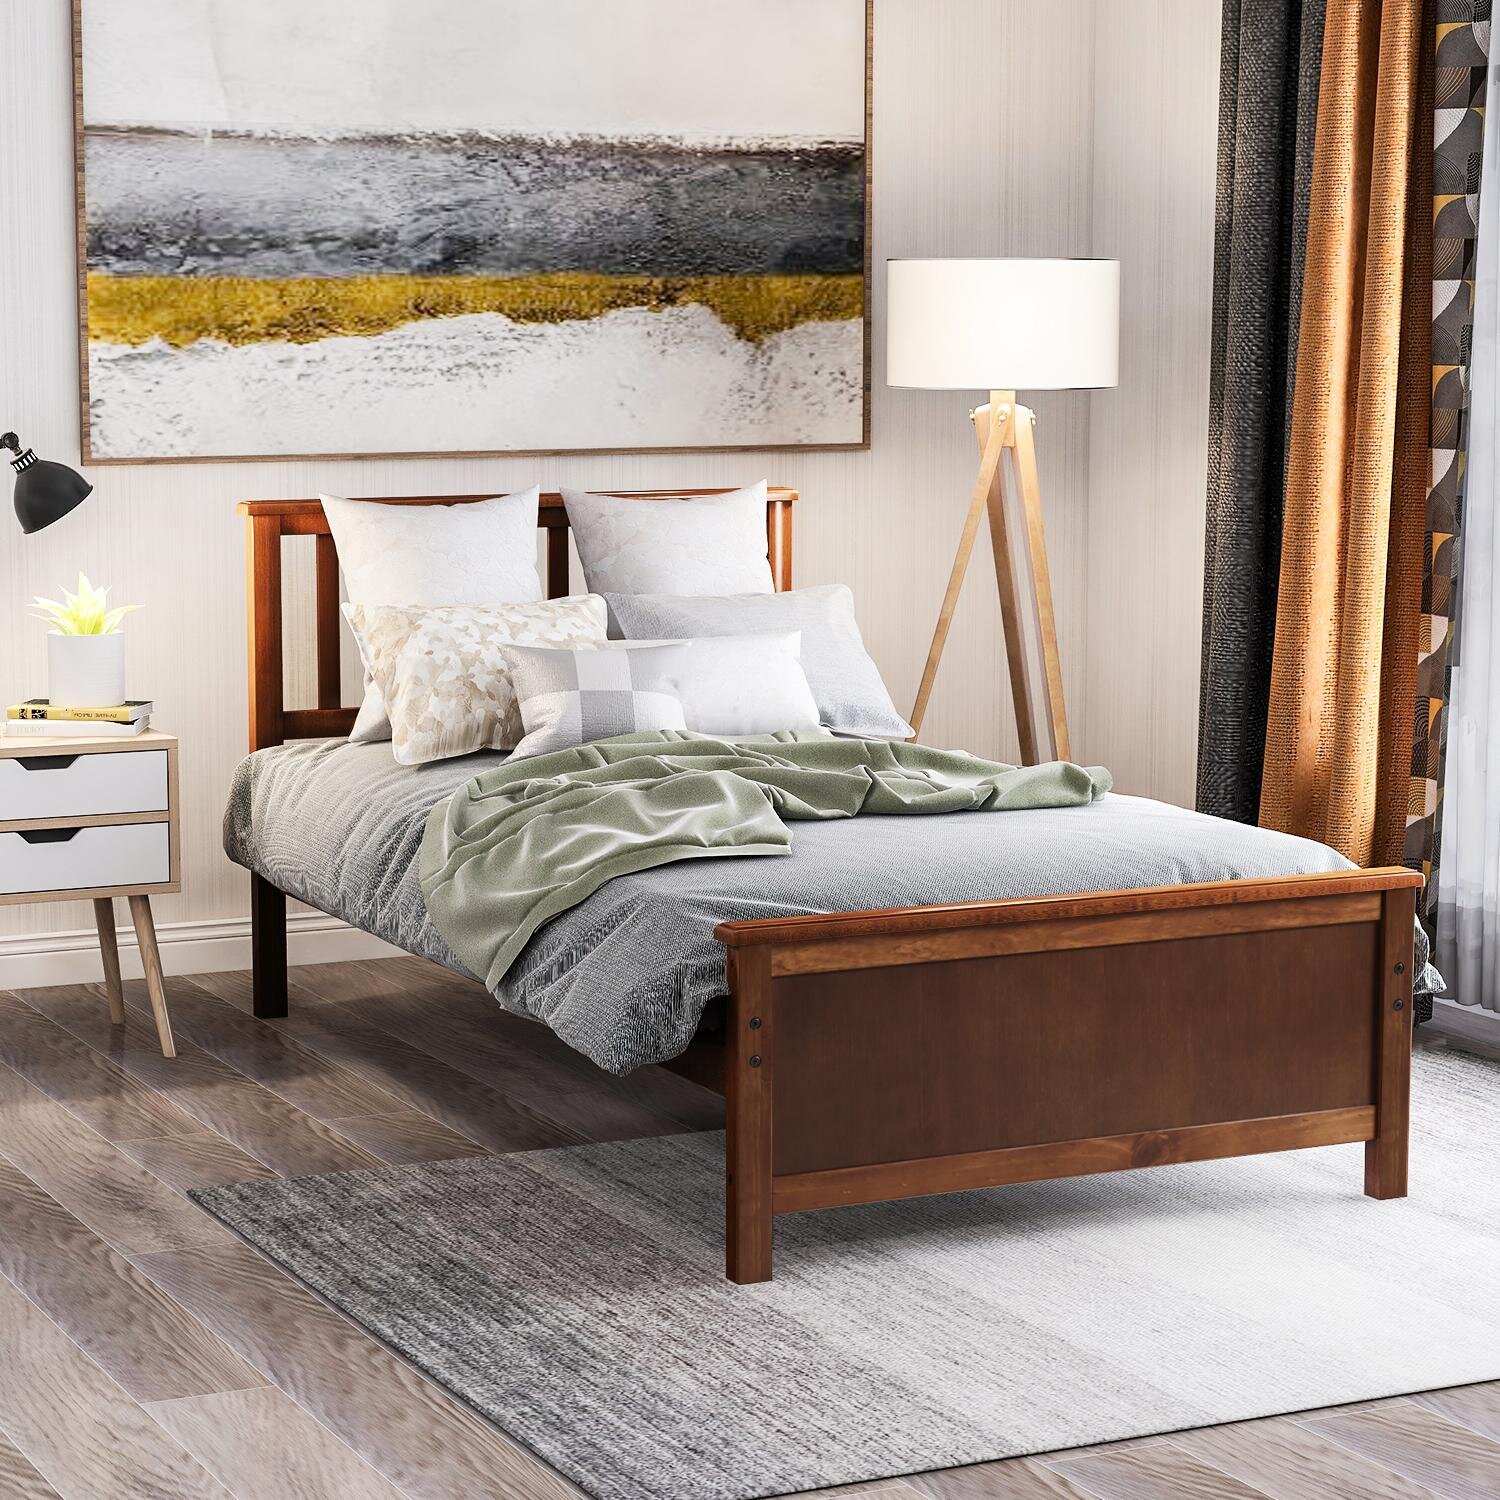 Details about   King Size Bed Frame Headboard Platform Wooden Bedroom Furniture Natural Finish 